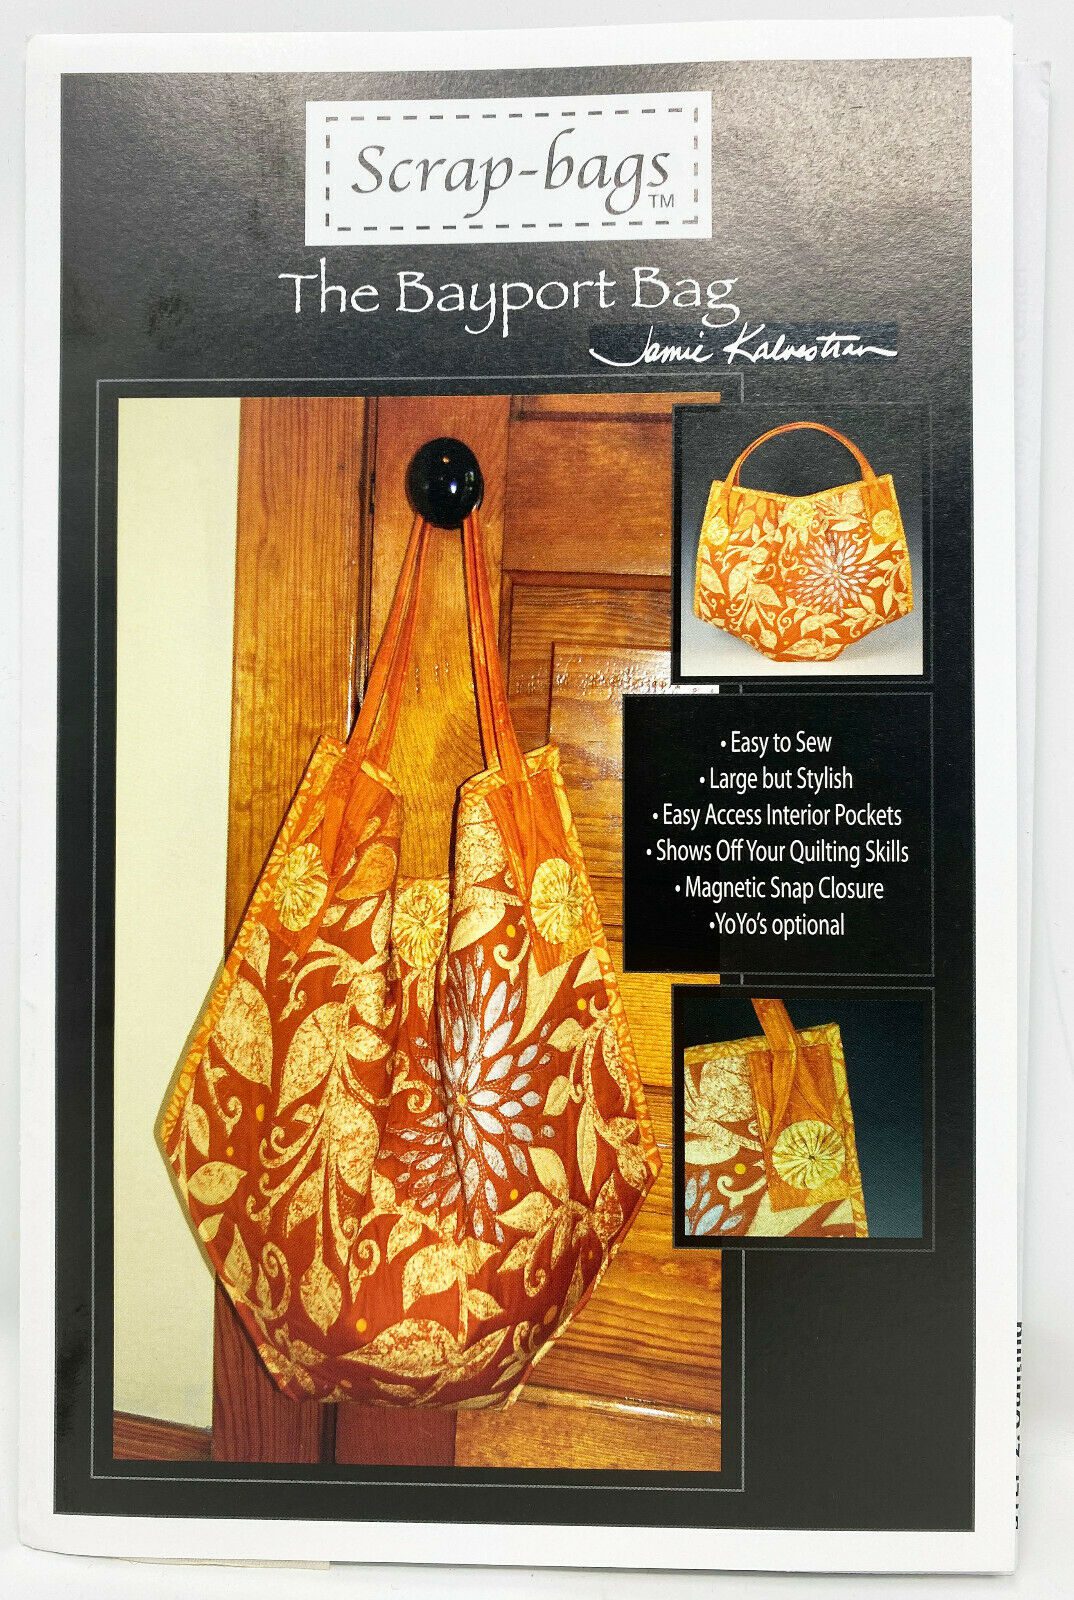 The Bayport Bag